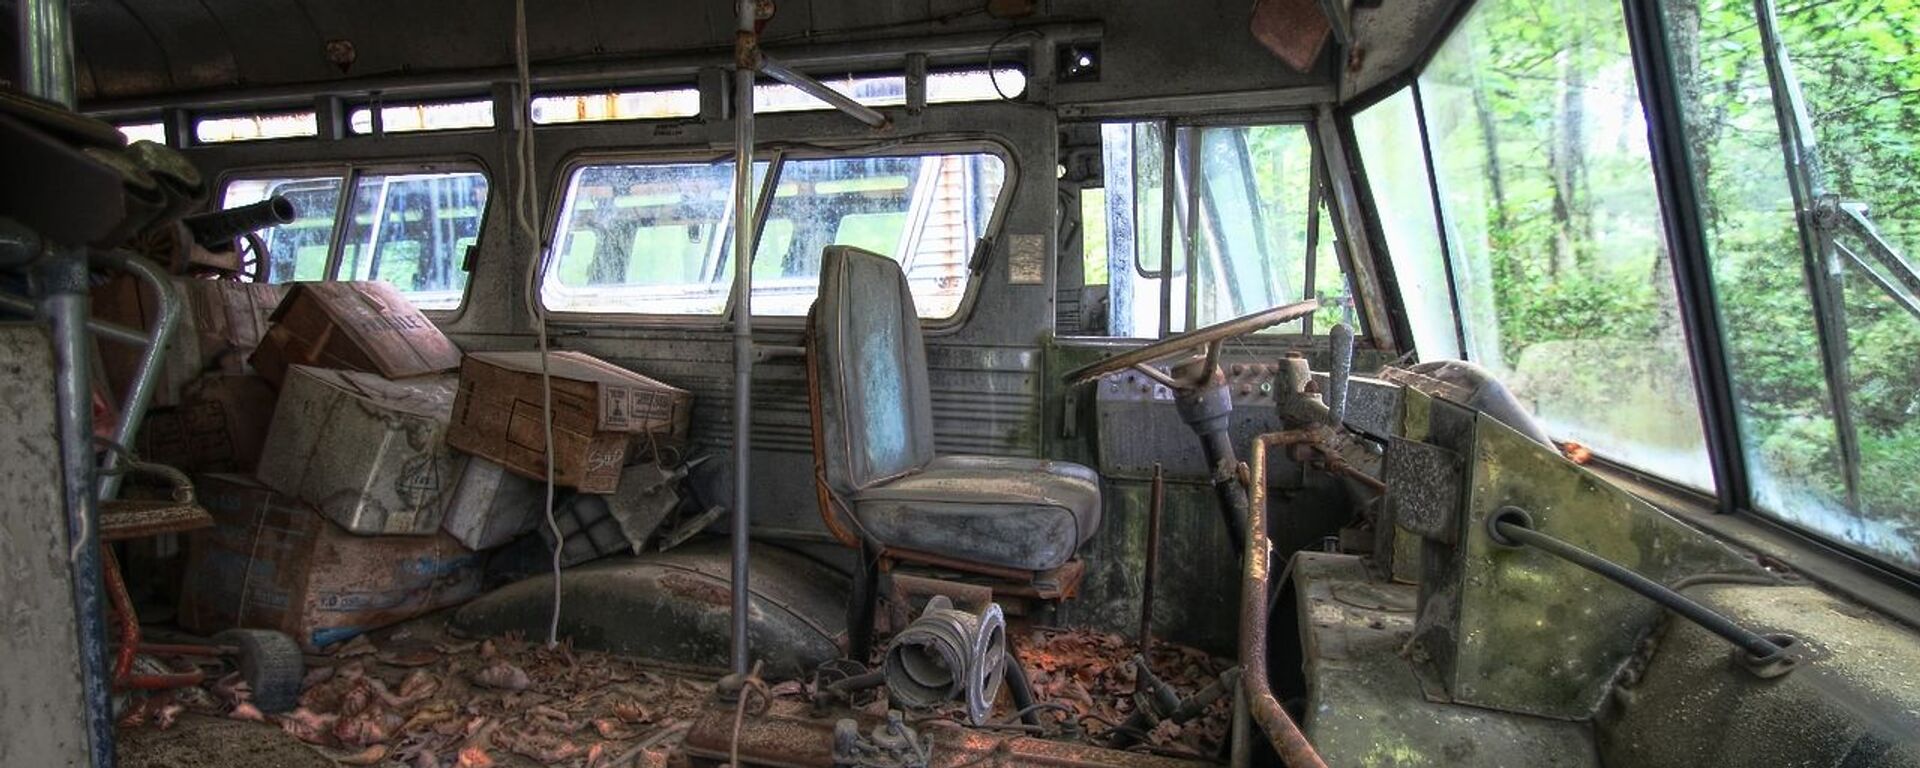 Un autobús abandonado, imagen referencial - Sputnik Mundo, 1920, 29.05.2021